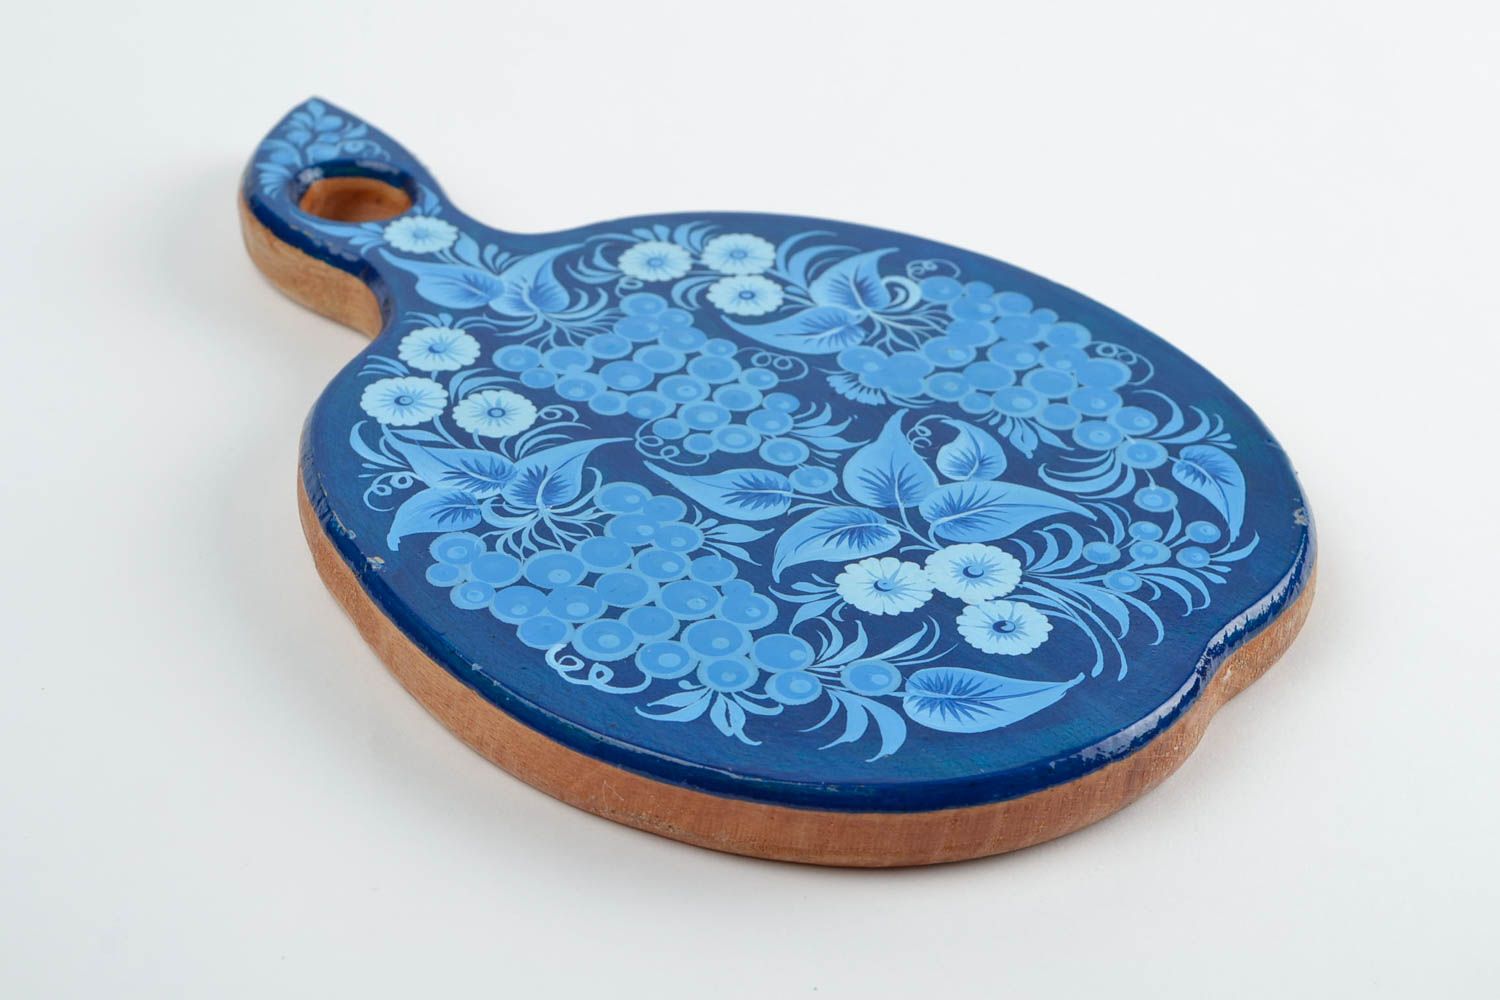 Tabla de madera decorada artesanal utensilio de cocina regalo para mujeres foto 4